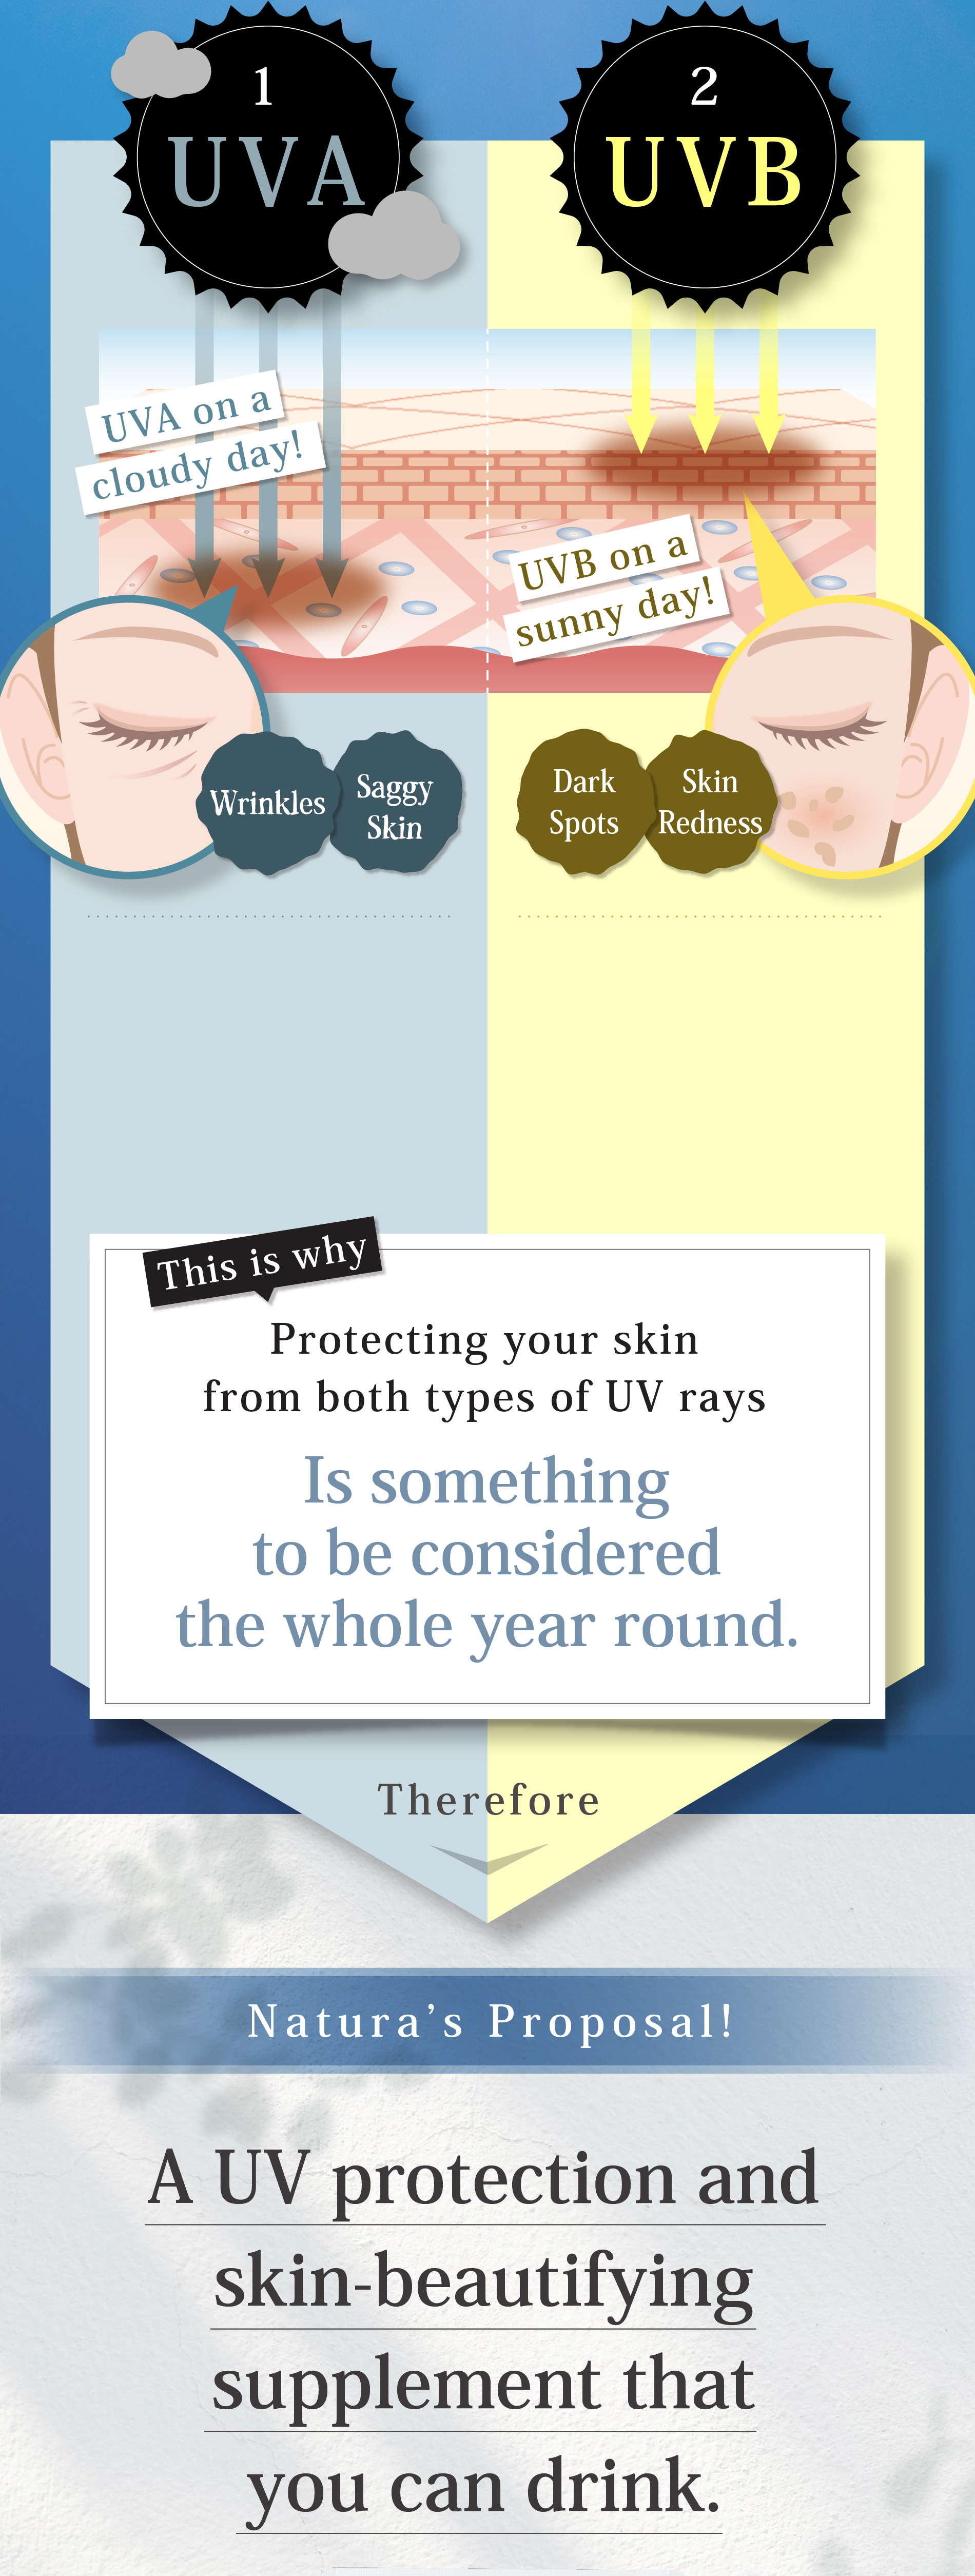 1 生活紫外線 UVA 2 レジャー紫外線 UVB だからこそ UVAからもUVBからも お肌を守るためには、365日紫外線 対策が必要 そこで ナトゥーラから新提案！飲む美容習慣で 紫外線対策も、キレイも叶えます。